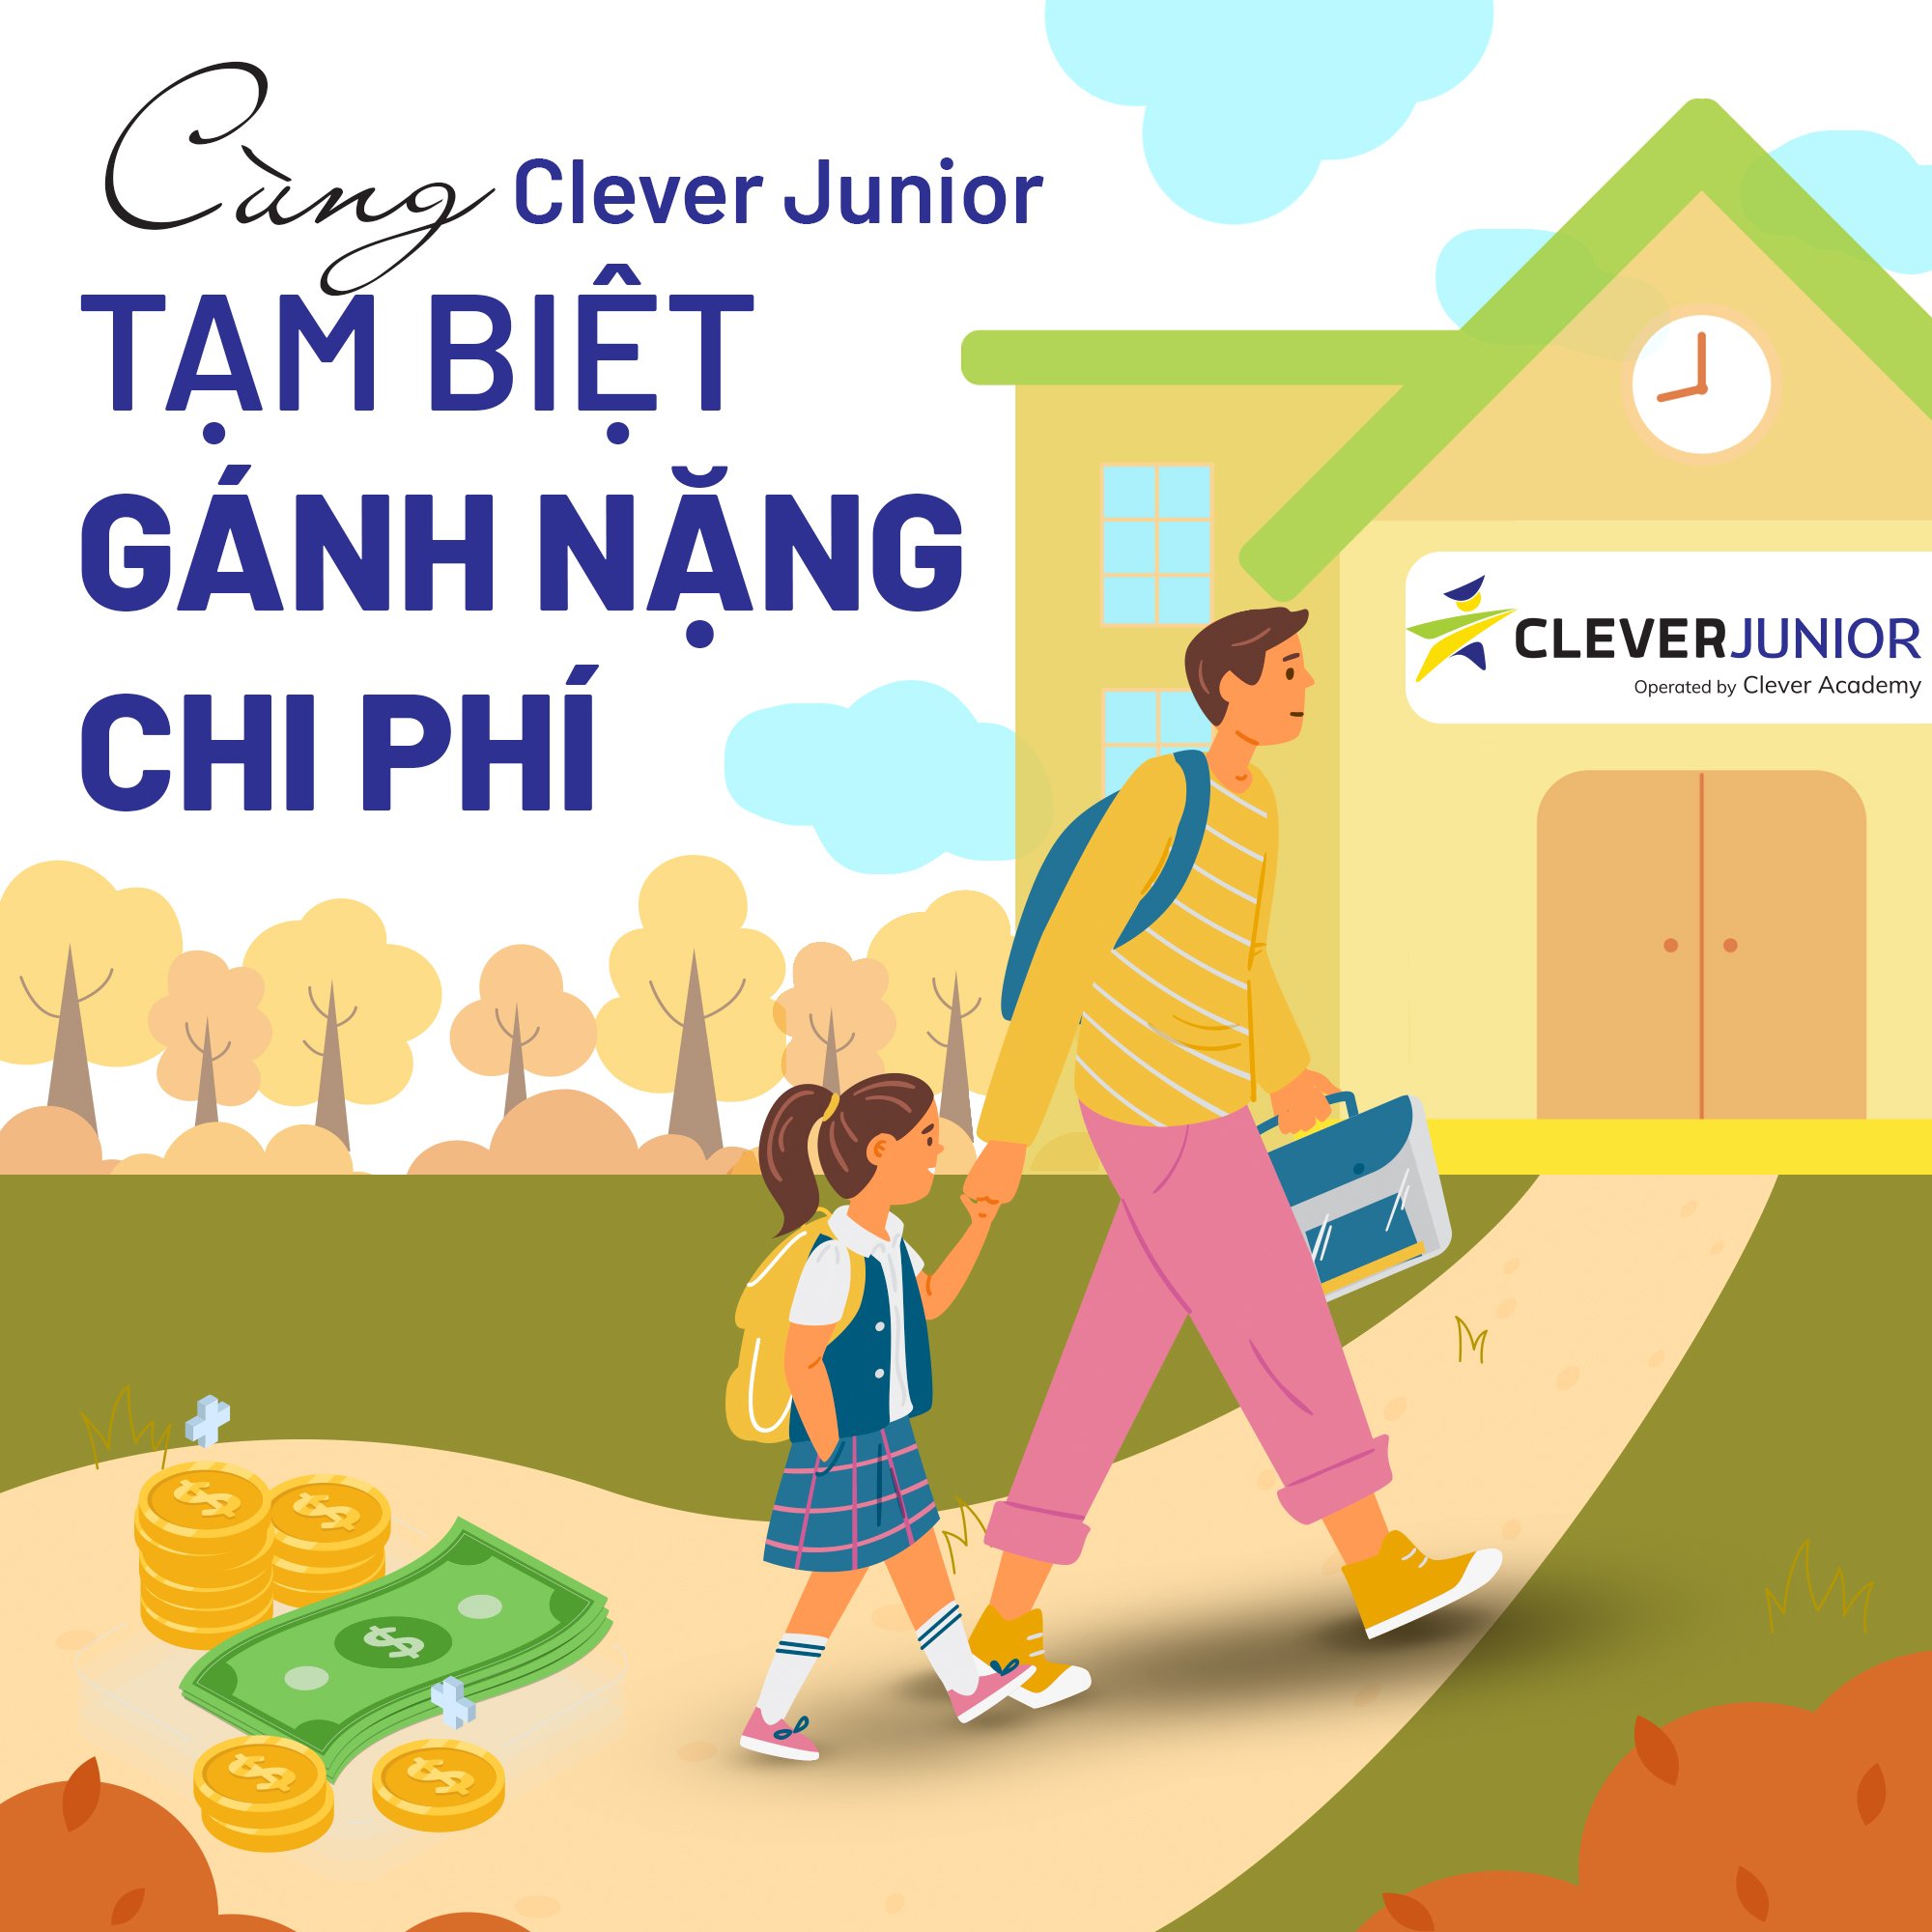 Cùng Clever Junior Hà Tĩnh tạm biệt gánh nặng chi phí